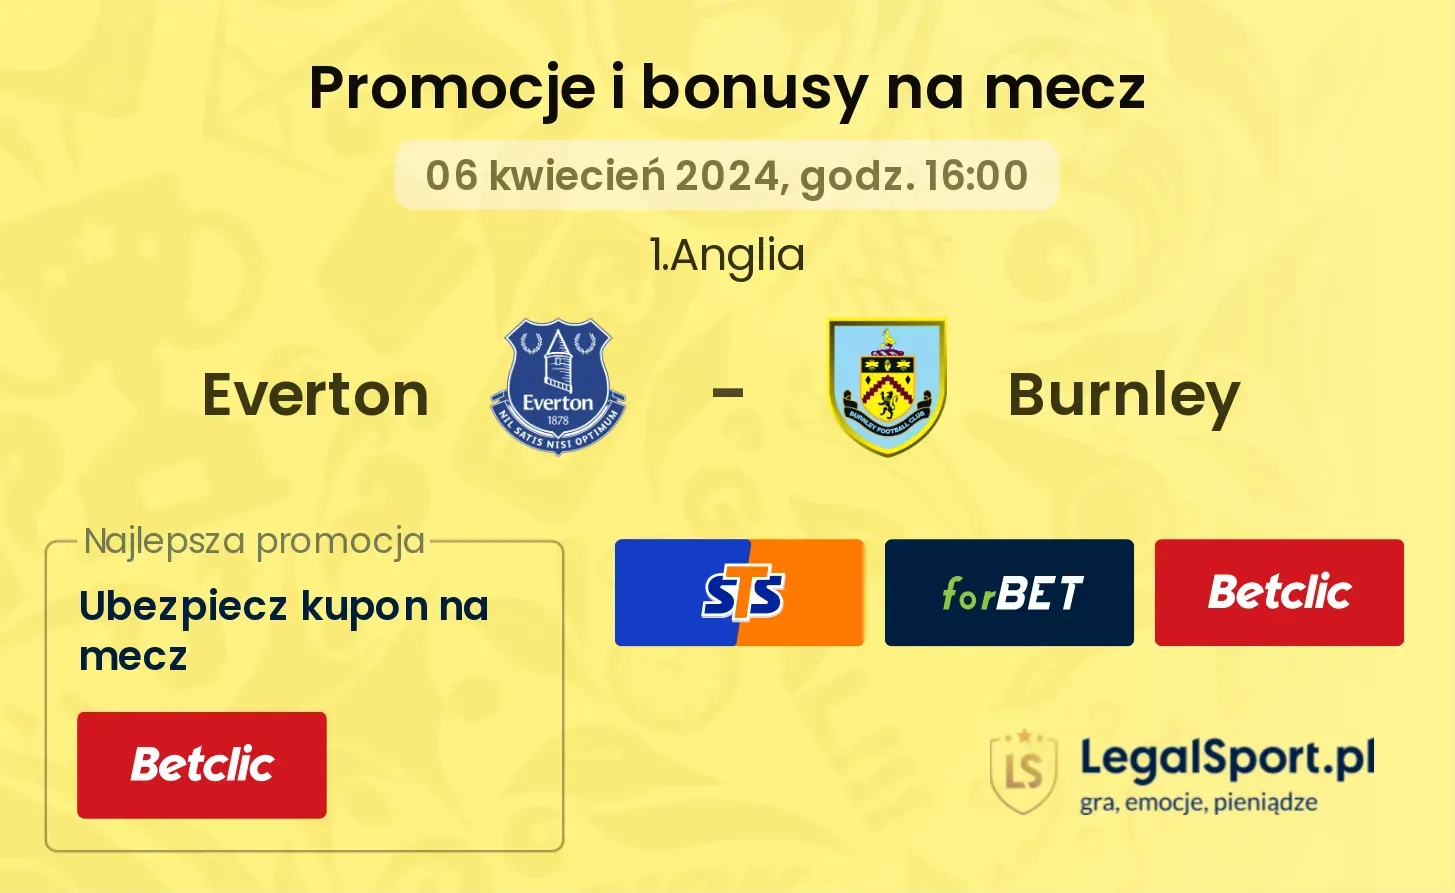 Everton - Burnley promocje bonusy na mecz